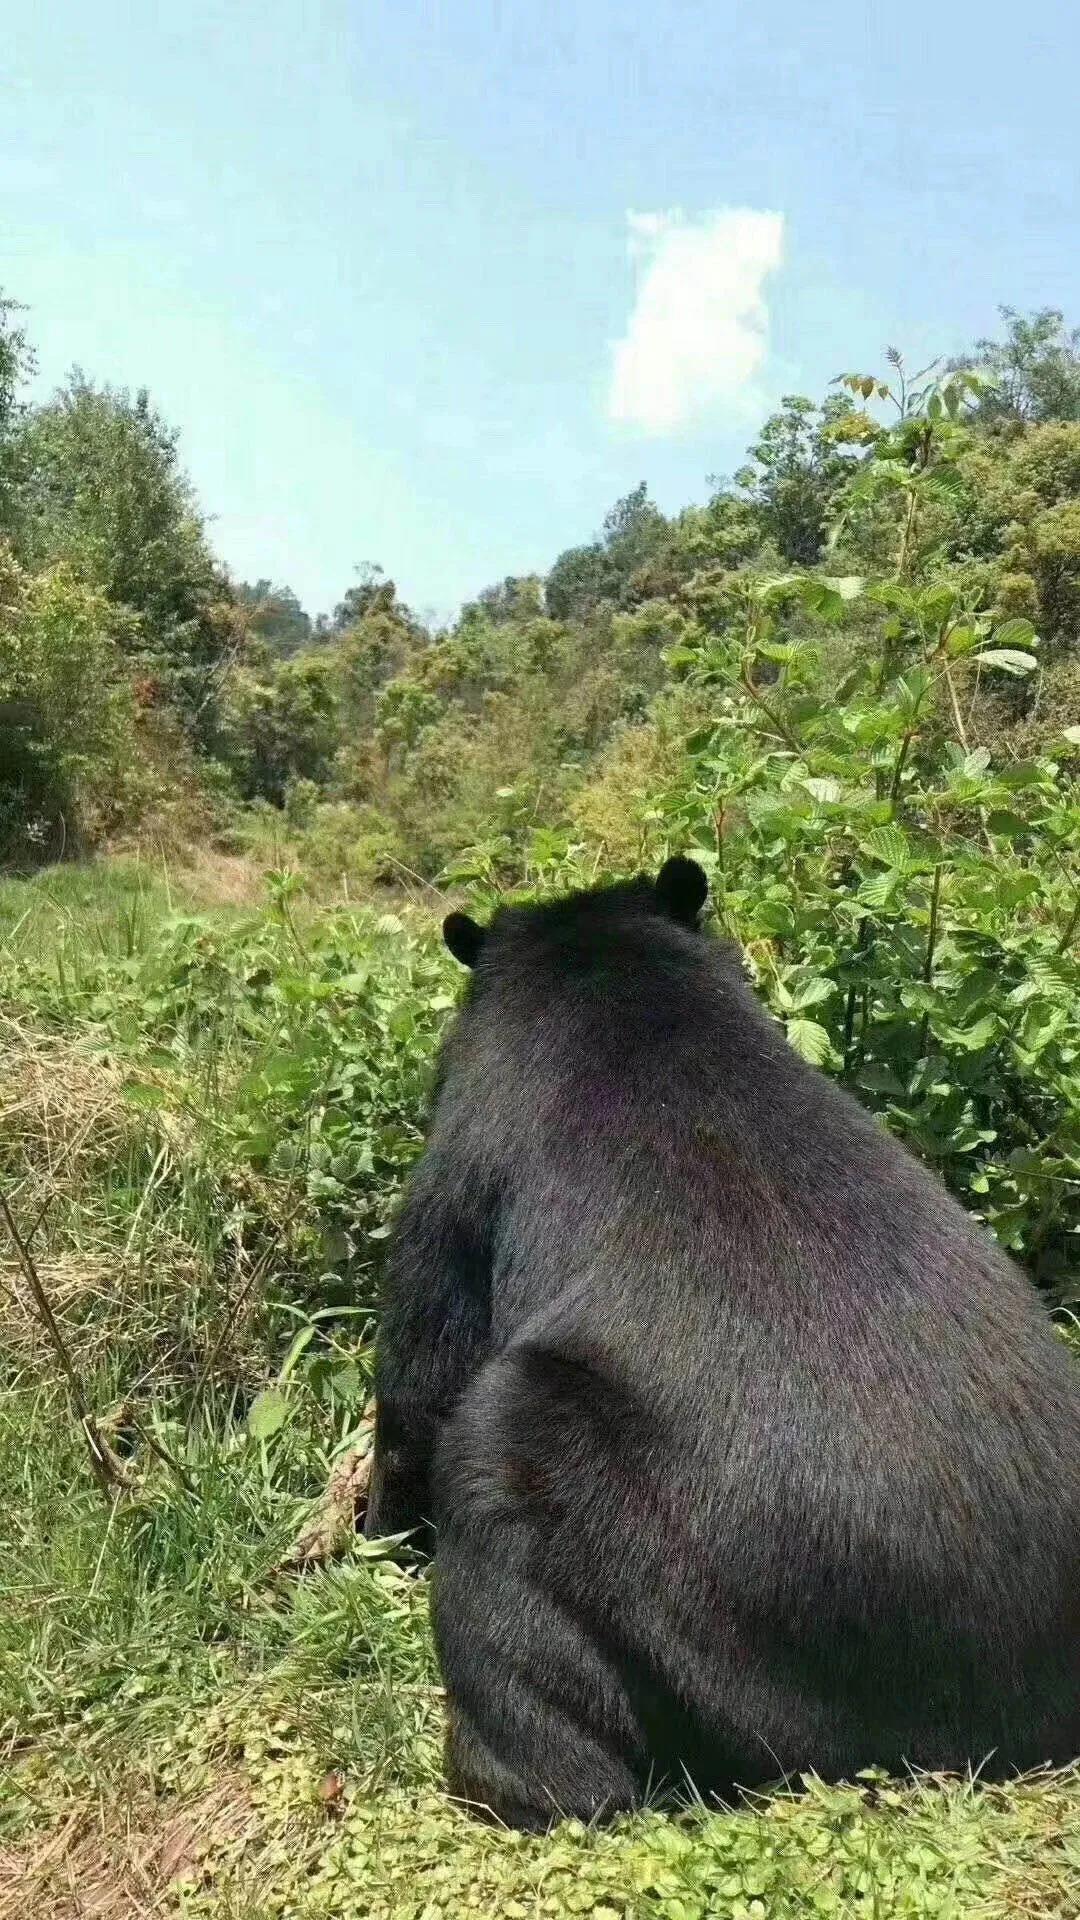 云南一老人上山捡菌碰到黑熊 吓懵滚下百米山坡受伤